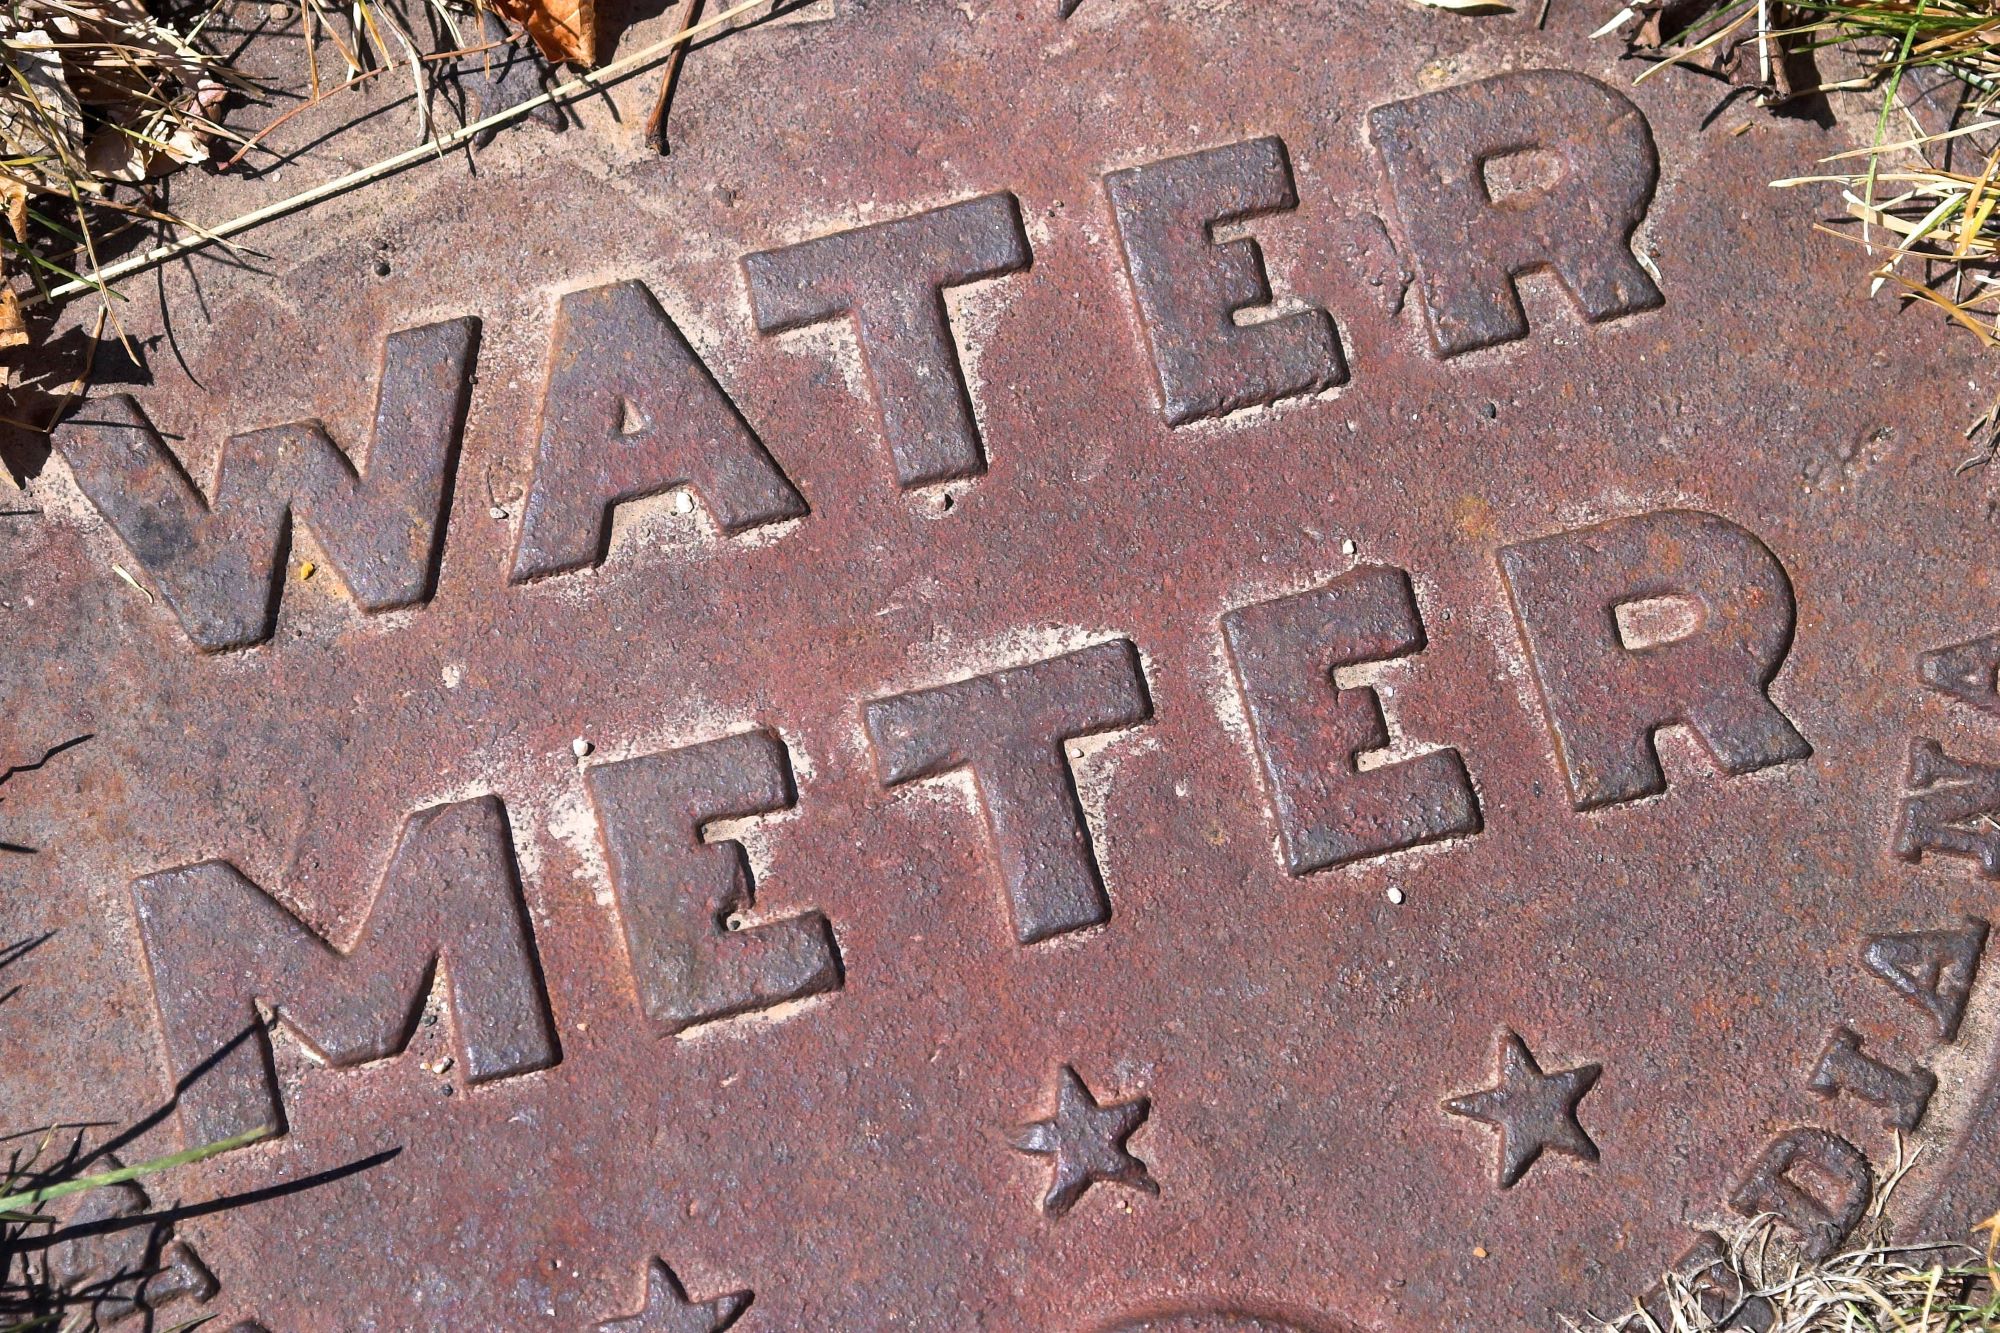 Water Meter Reading in Washington